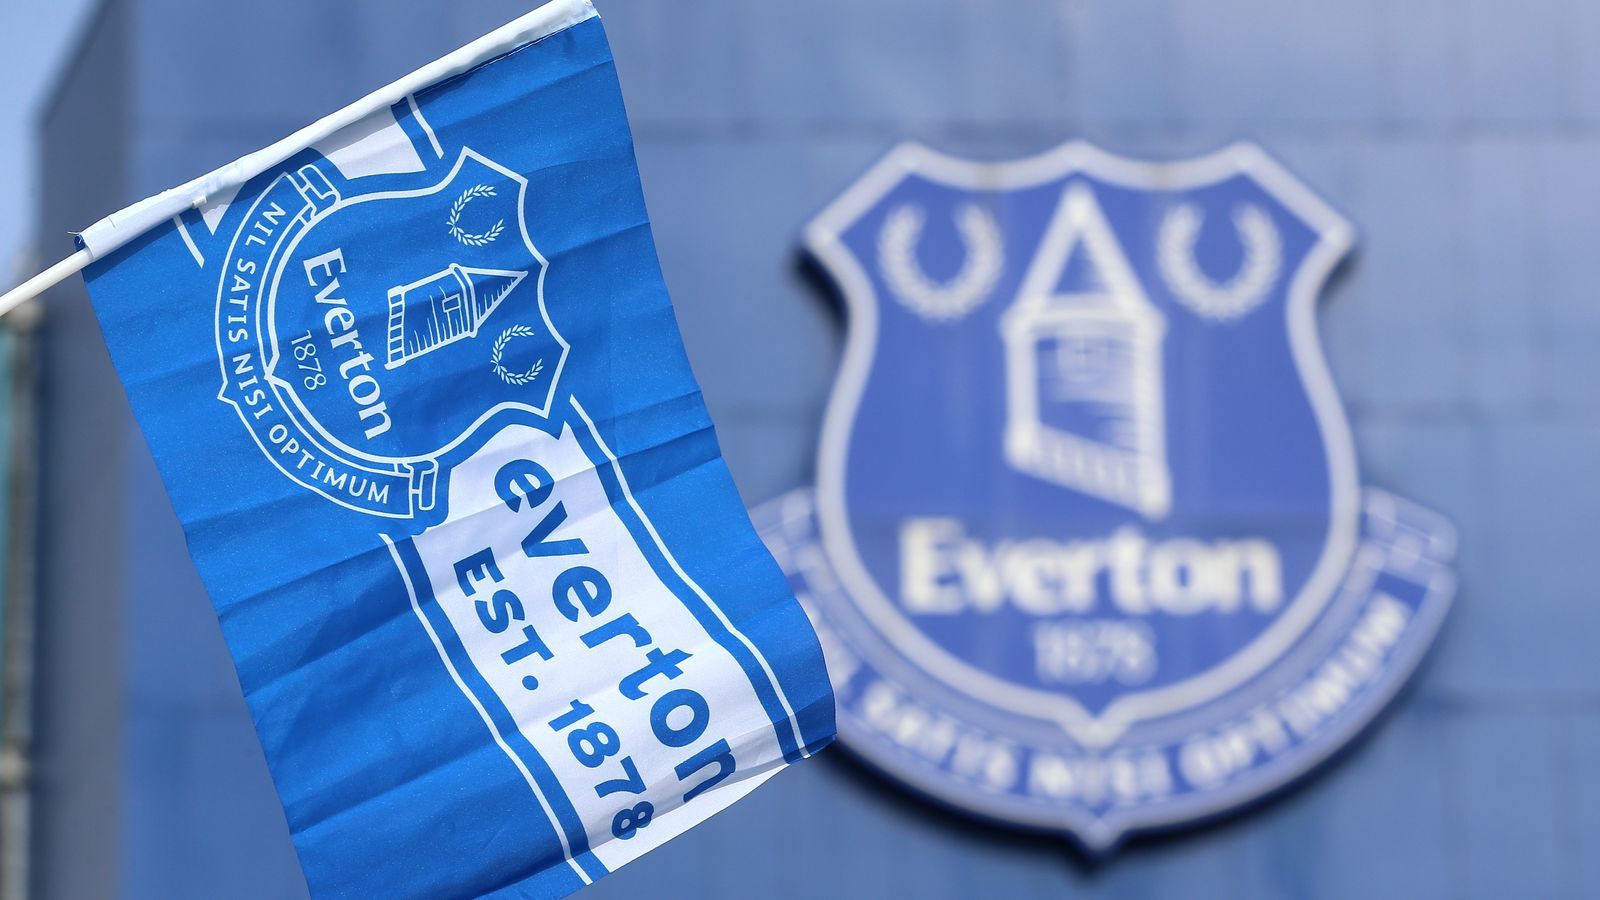 La Premier League restó diez puntos al Everton